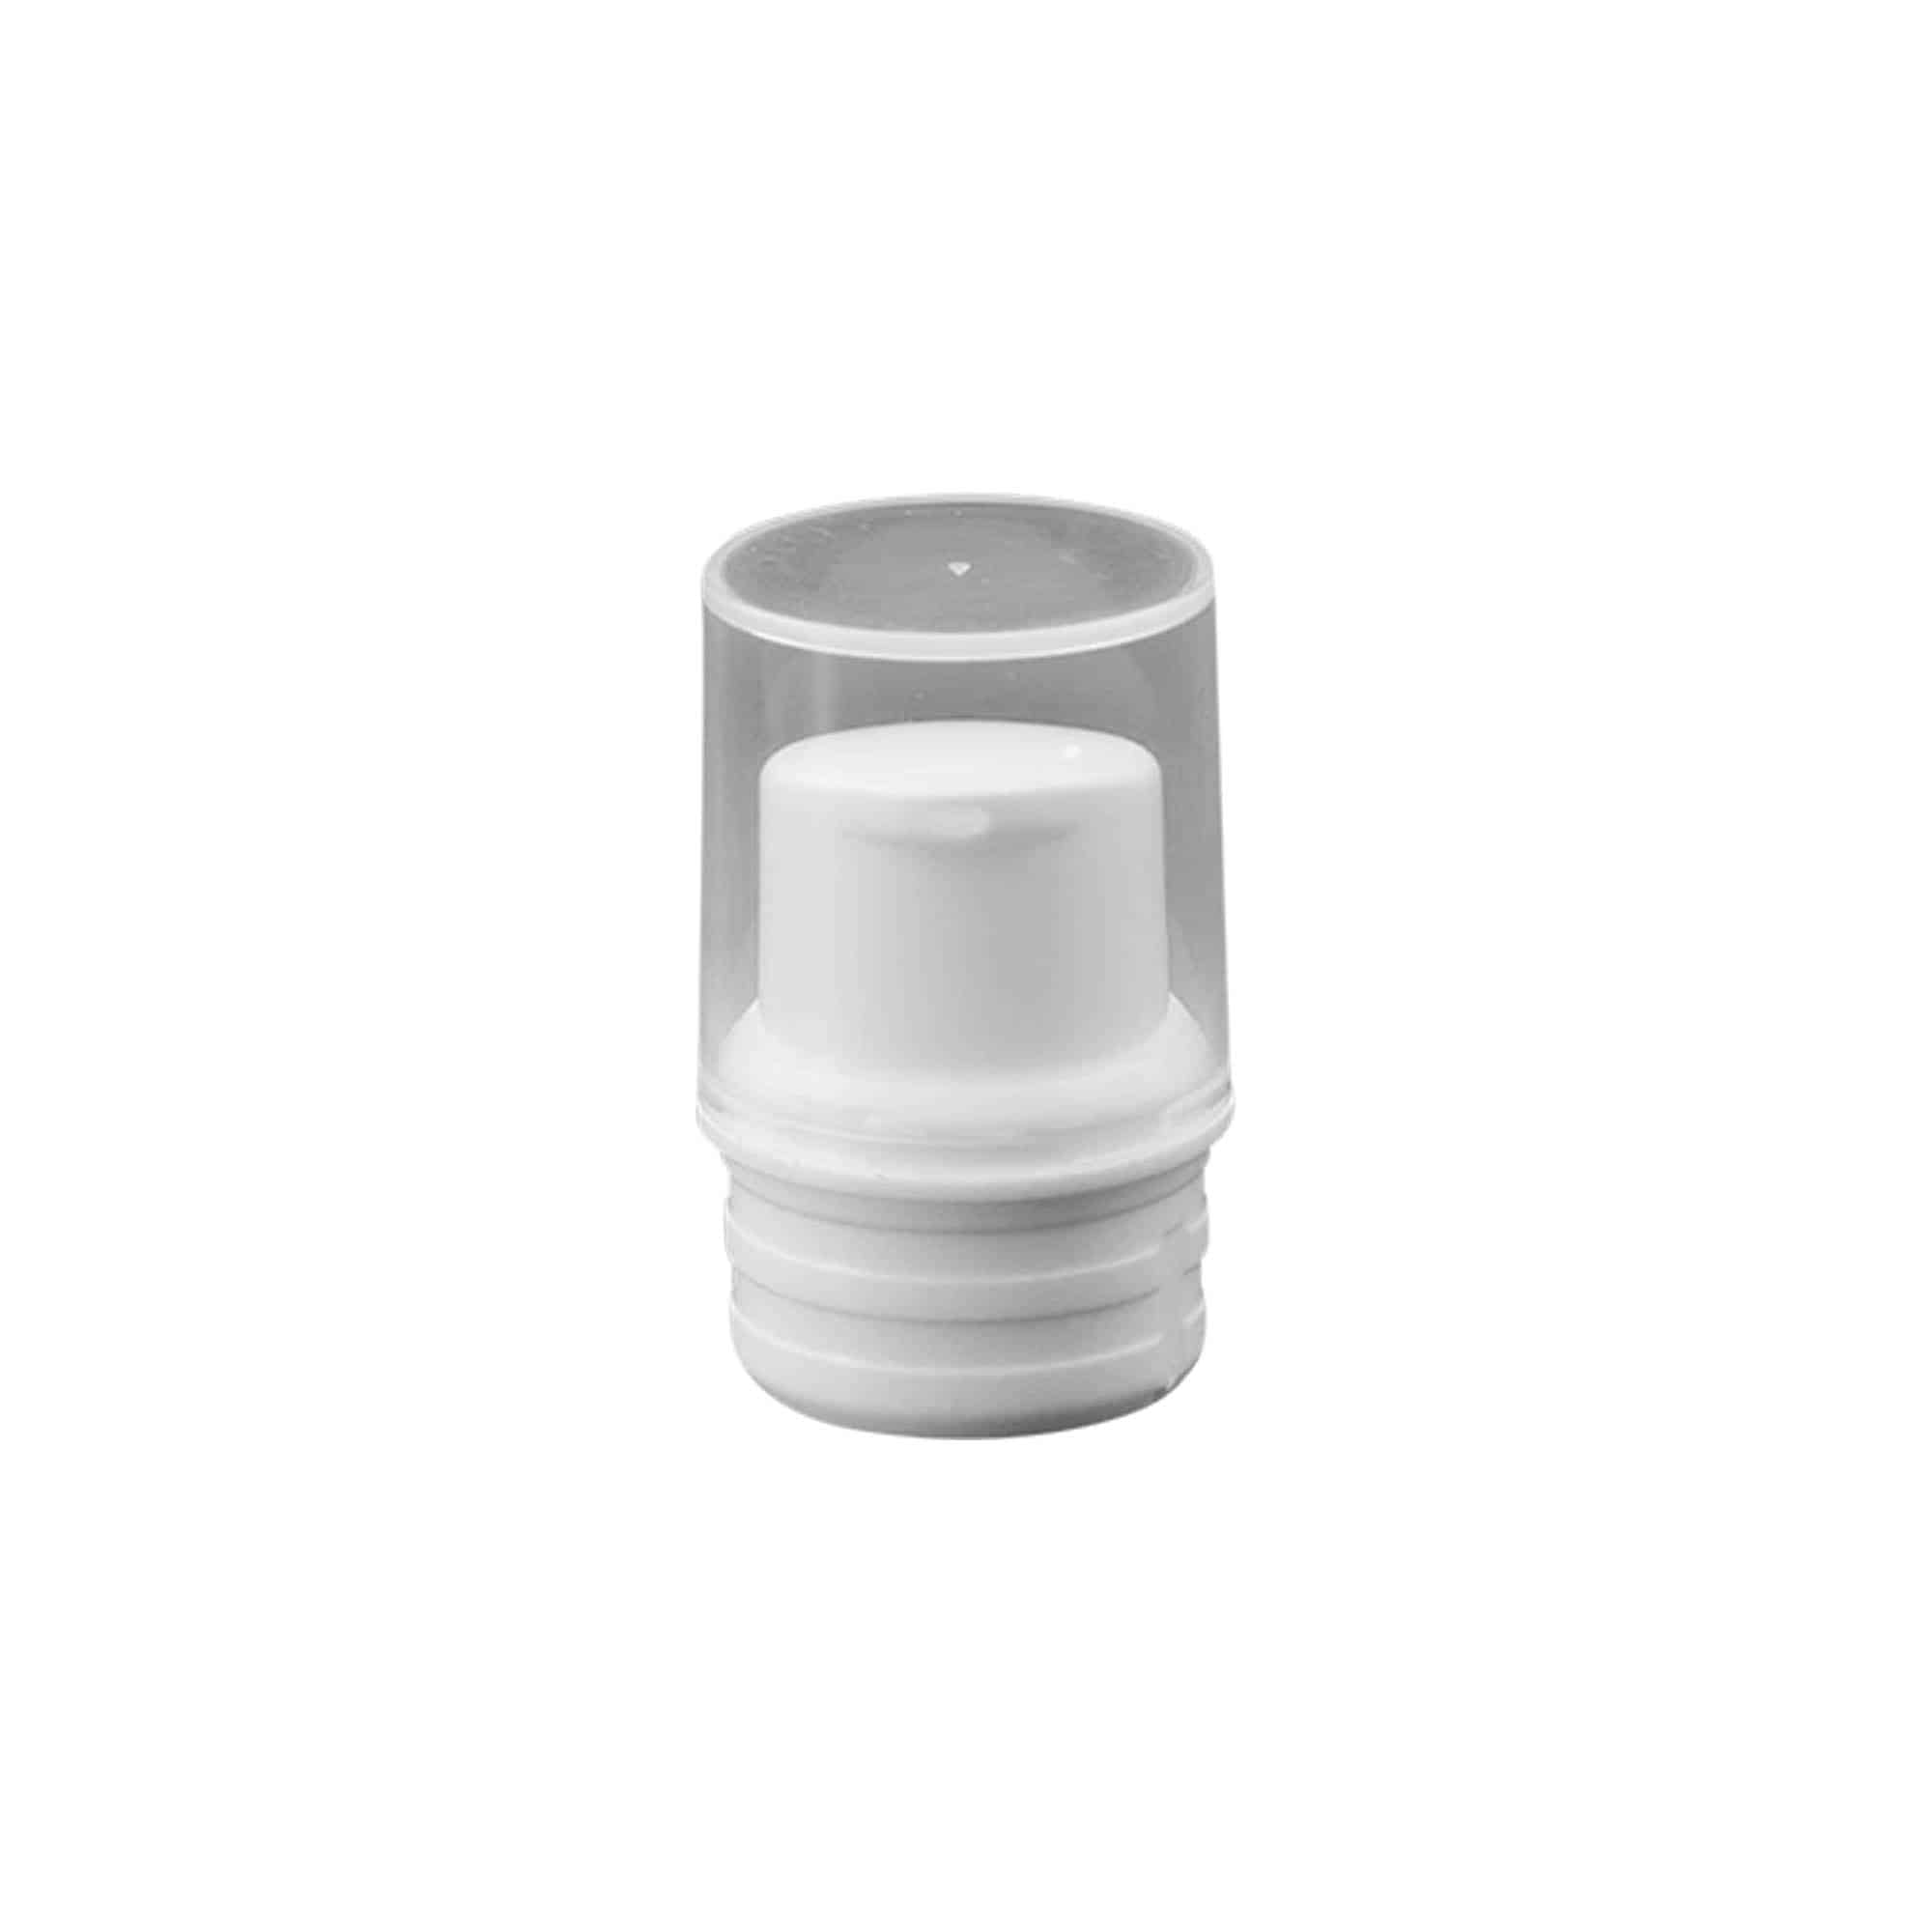 Airless dispenser pump head 'Nano', PP plastic, white